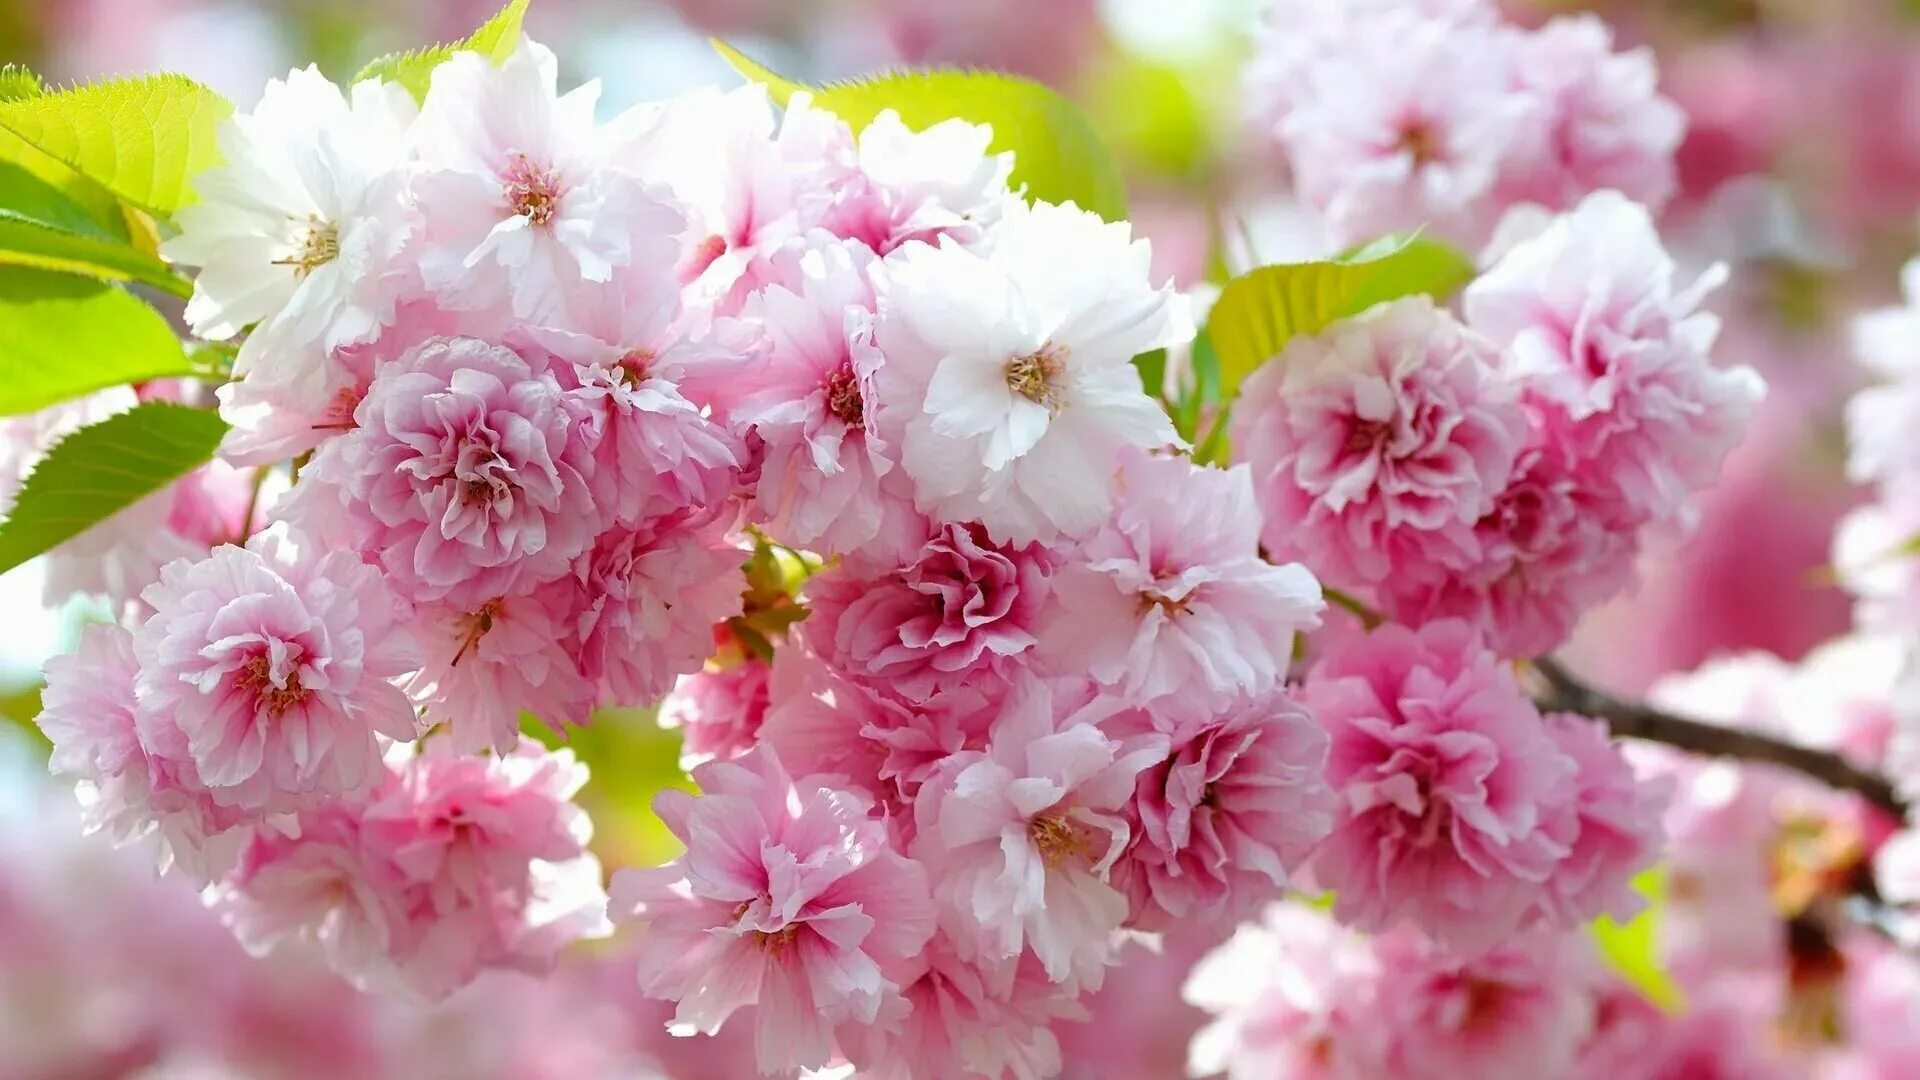 Весеннее фото на заставку. Весенние цветы. Красивые весенние цветы. Цветы Сакуры. Цветущая вишня.